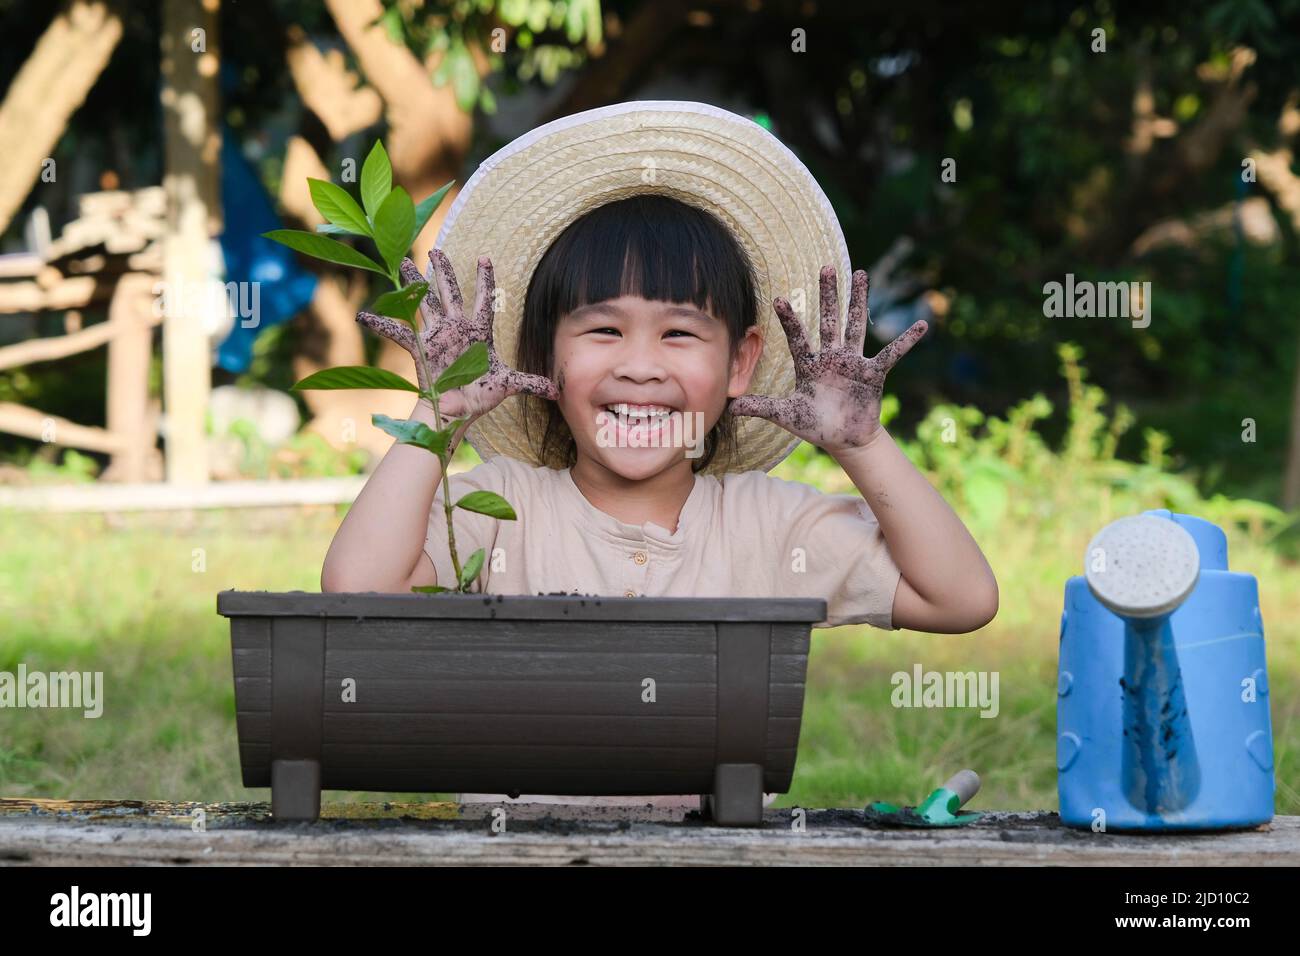 Une petite fille portant un chapeau aide sa mère dans le jardin, un petit jardinier. Jolie fille plantant des fleurs dans des pots. Une petite fille mignonne sourit et se montre Banque D'Images